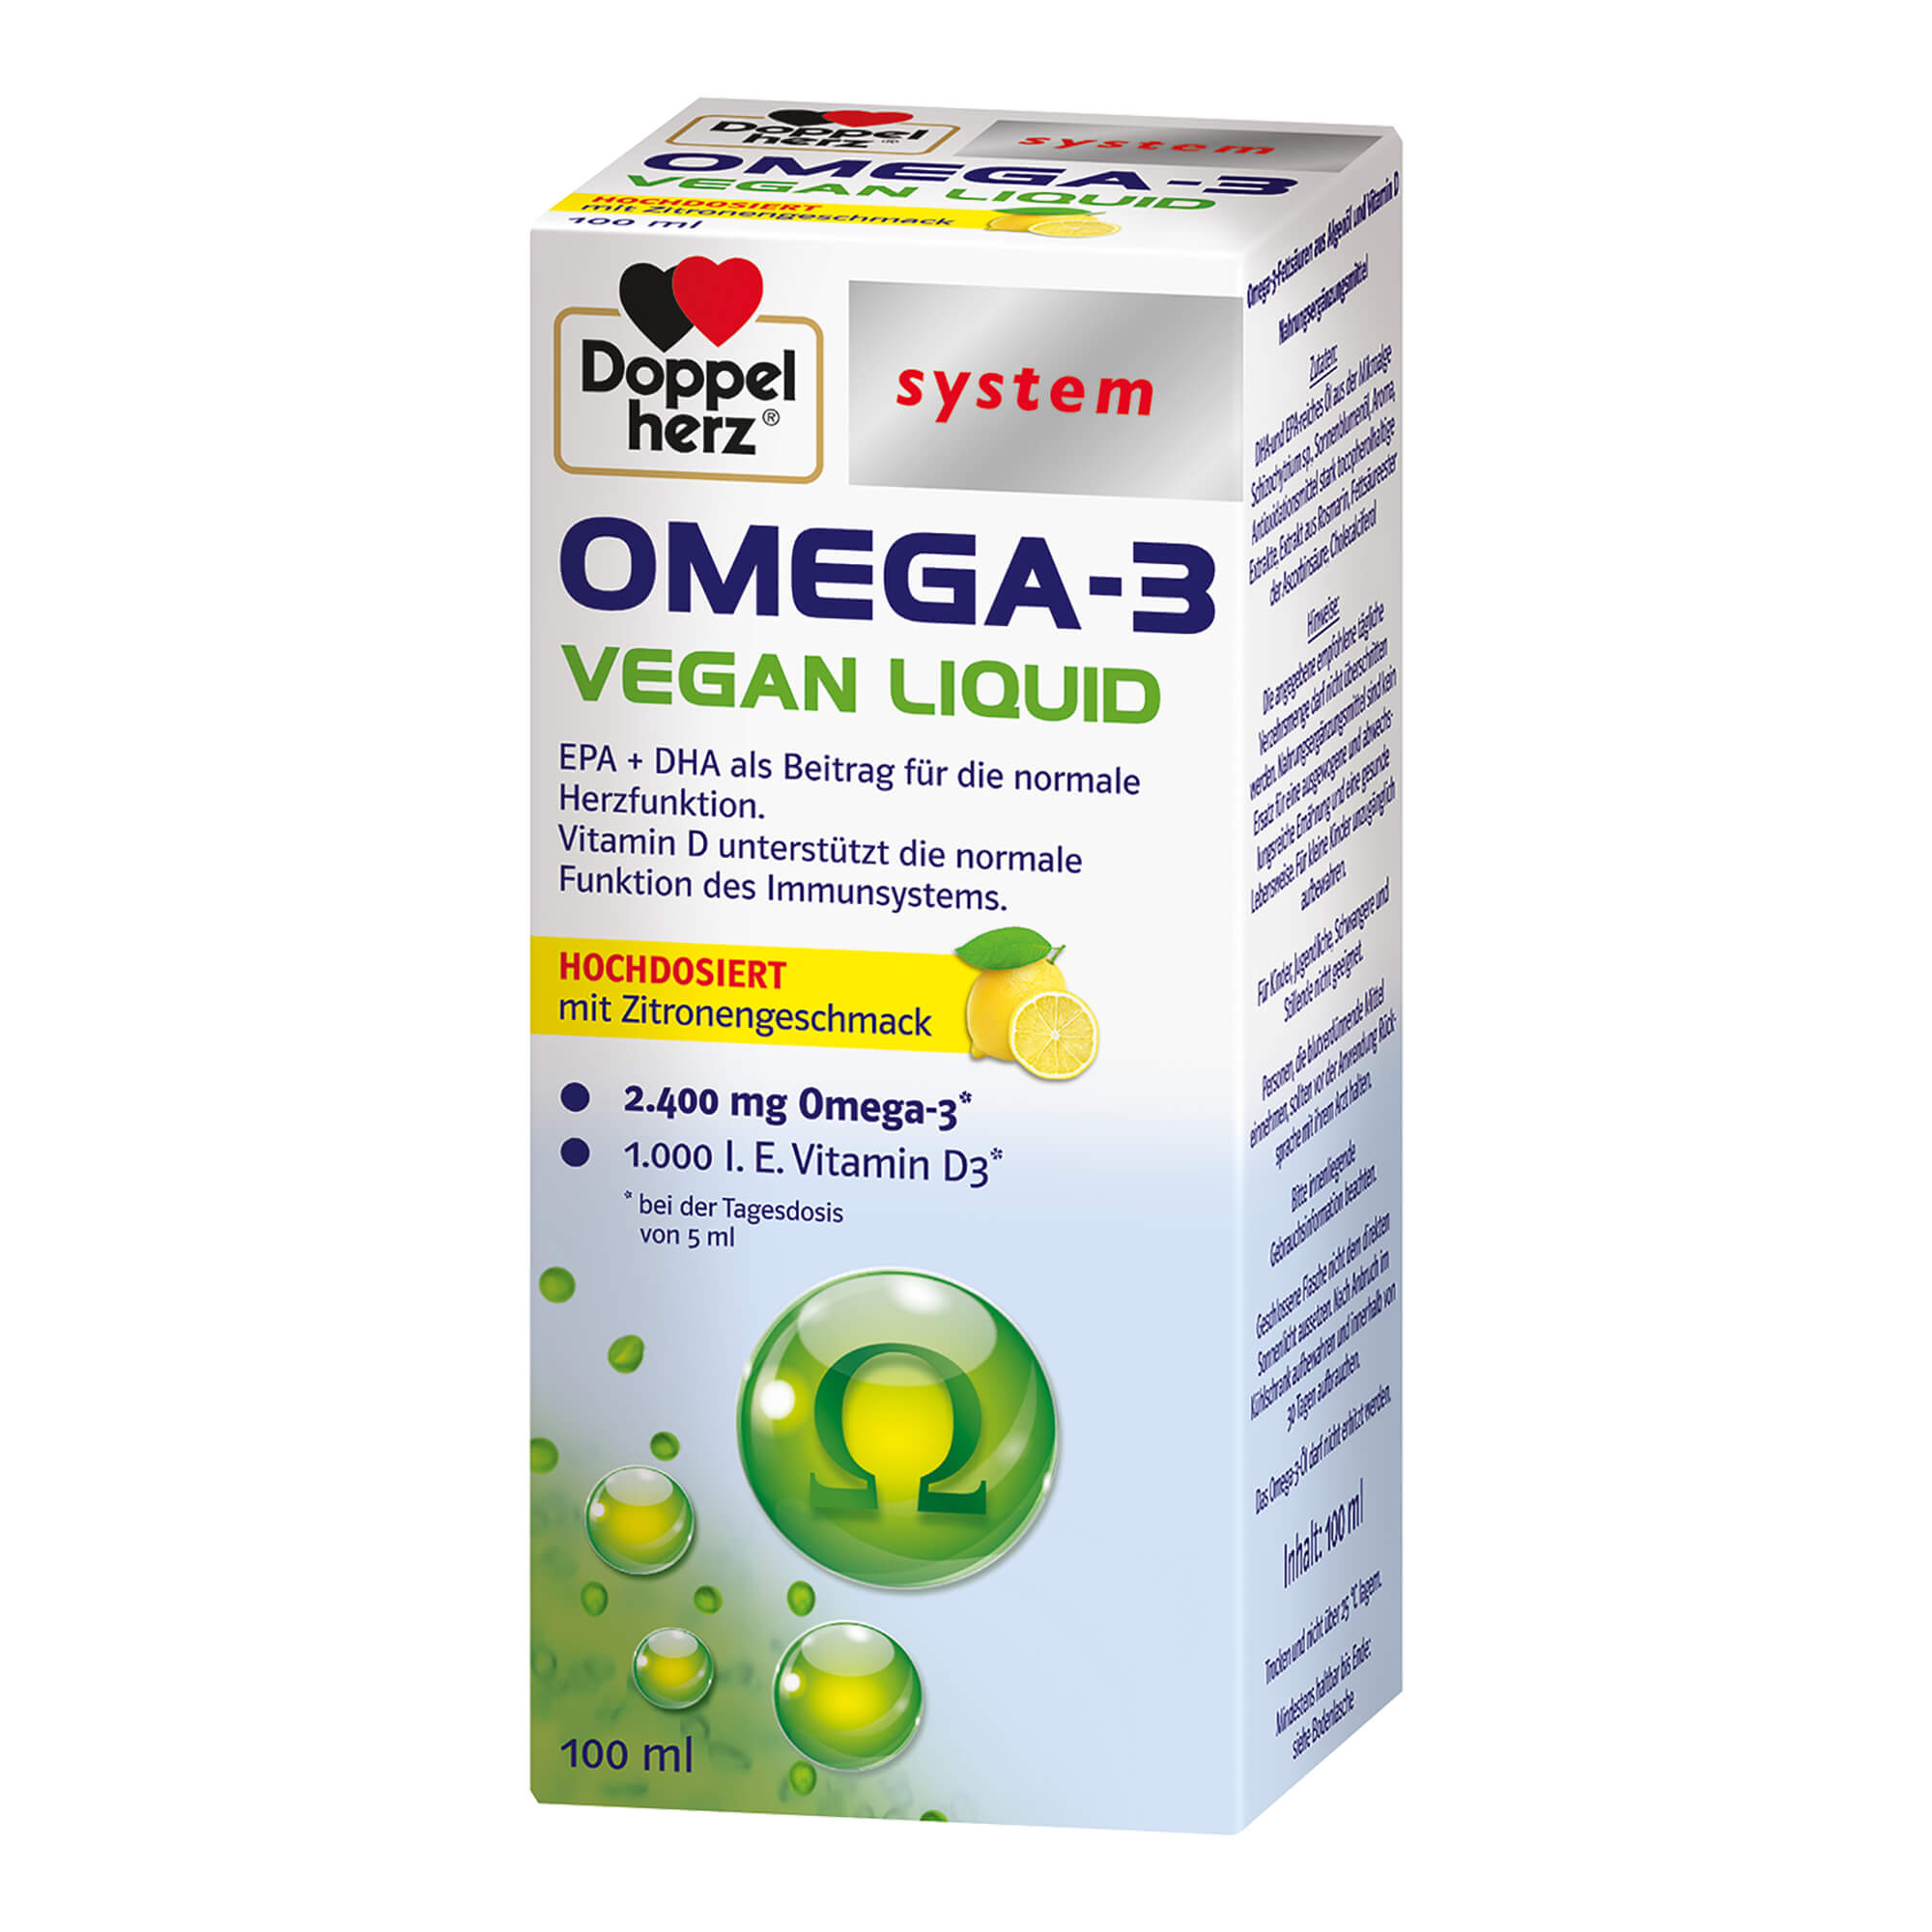 Nahrungsergänzungsmittel mit Omega-3 Fettsäuren aus Algenöl und Vitamin D.